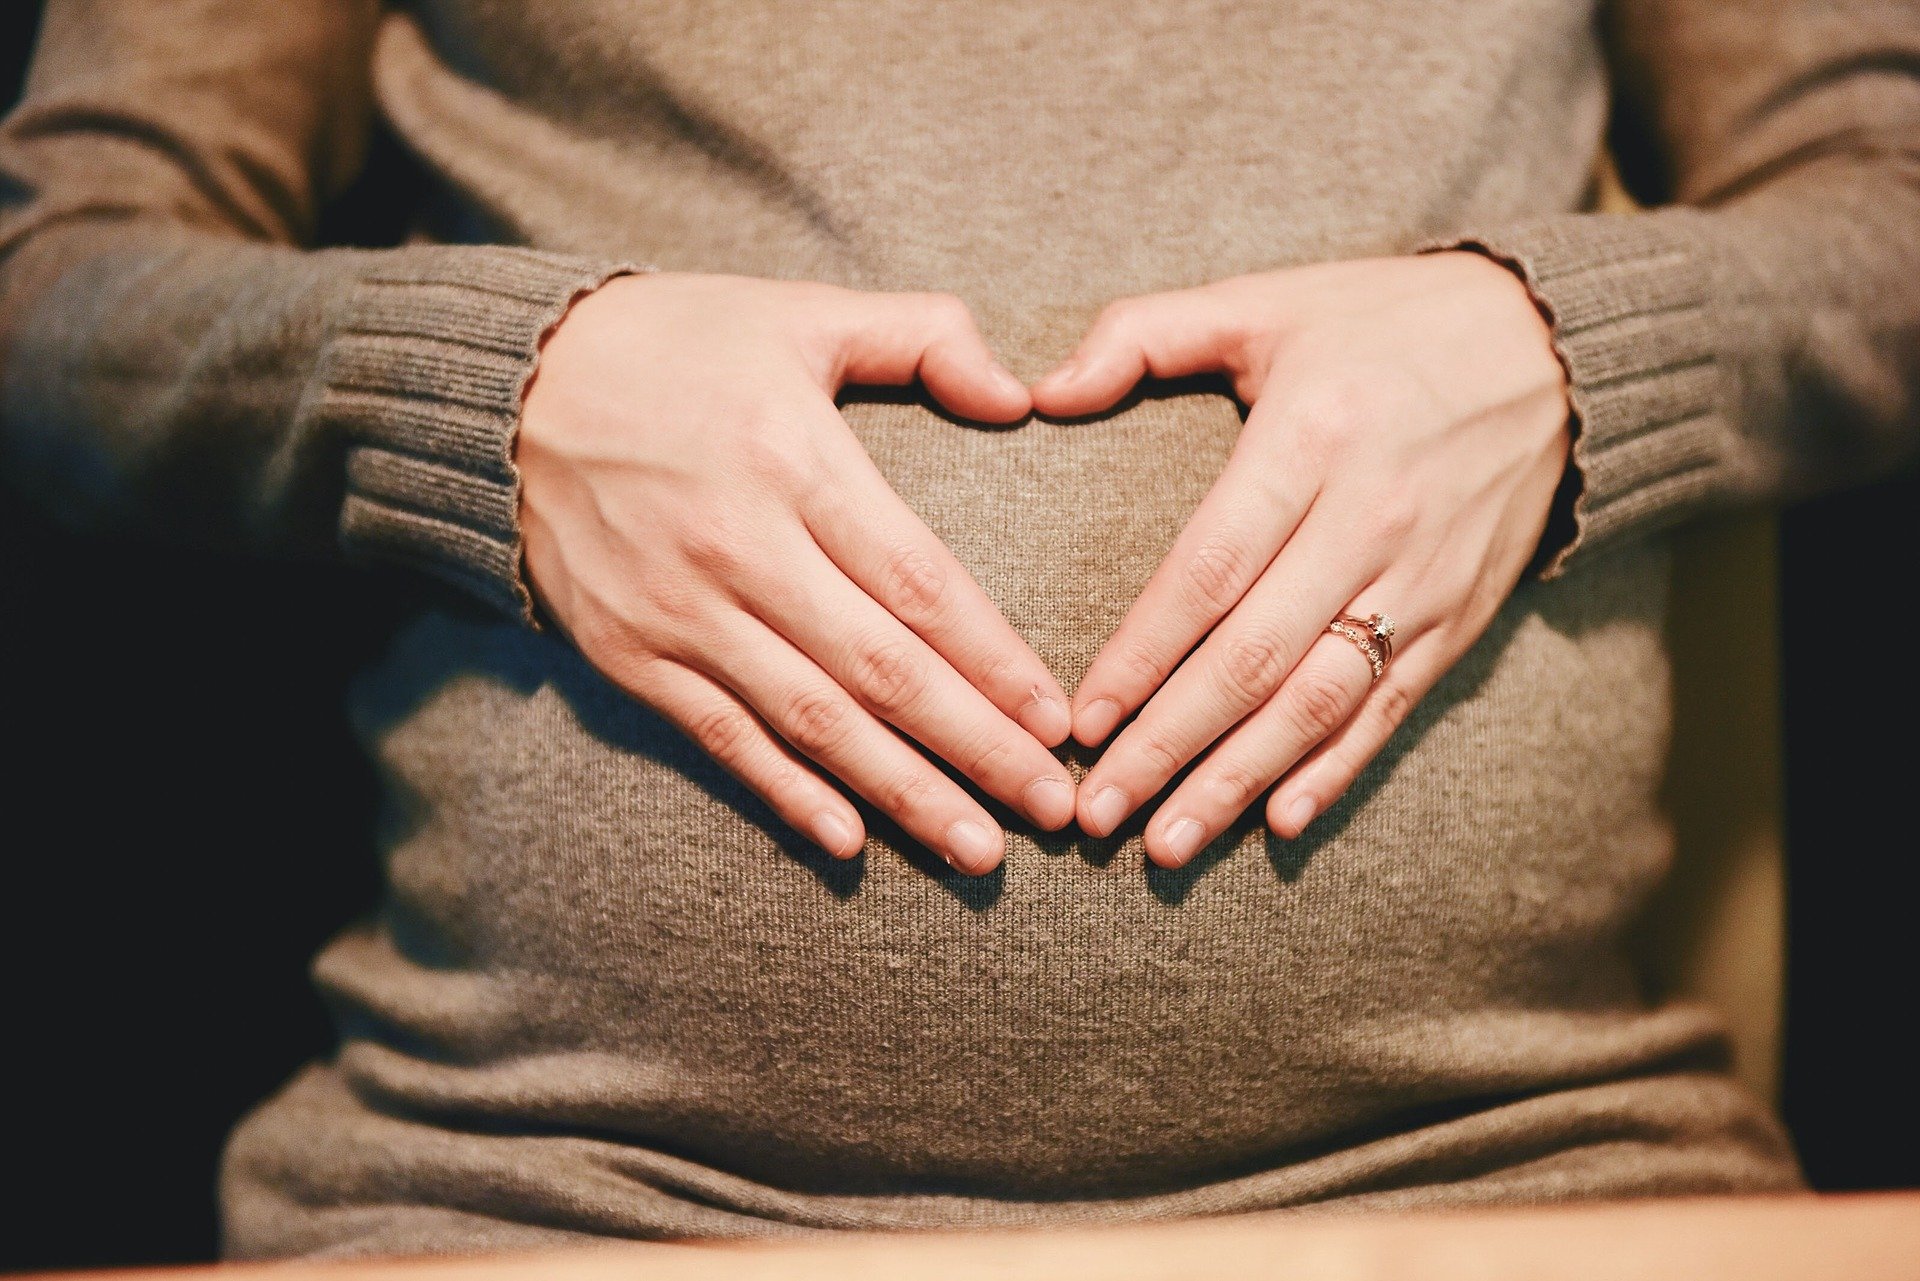 Ciąża wysokiego ryzyka – co to jest i jak postępować?